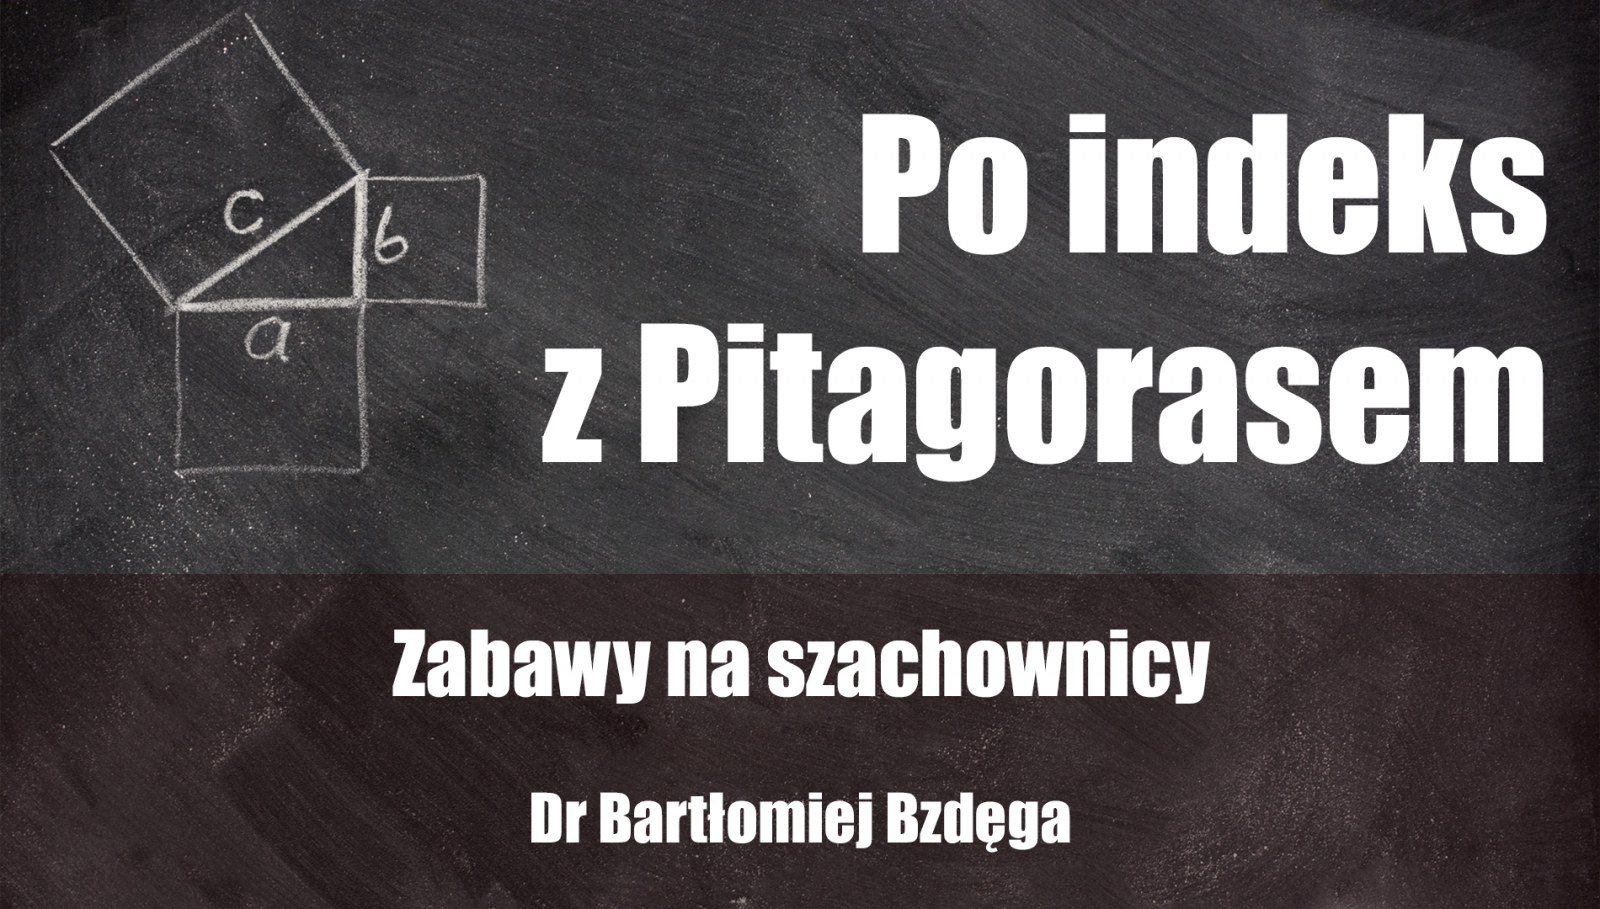 Grafika wykładu Po indeks z Pitagorasem - czarna tablica z narysowanym kredą twierdzeniem Pitagorasa, Zabawy na szachownicy - dr Bartłomiej Bzdęga